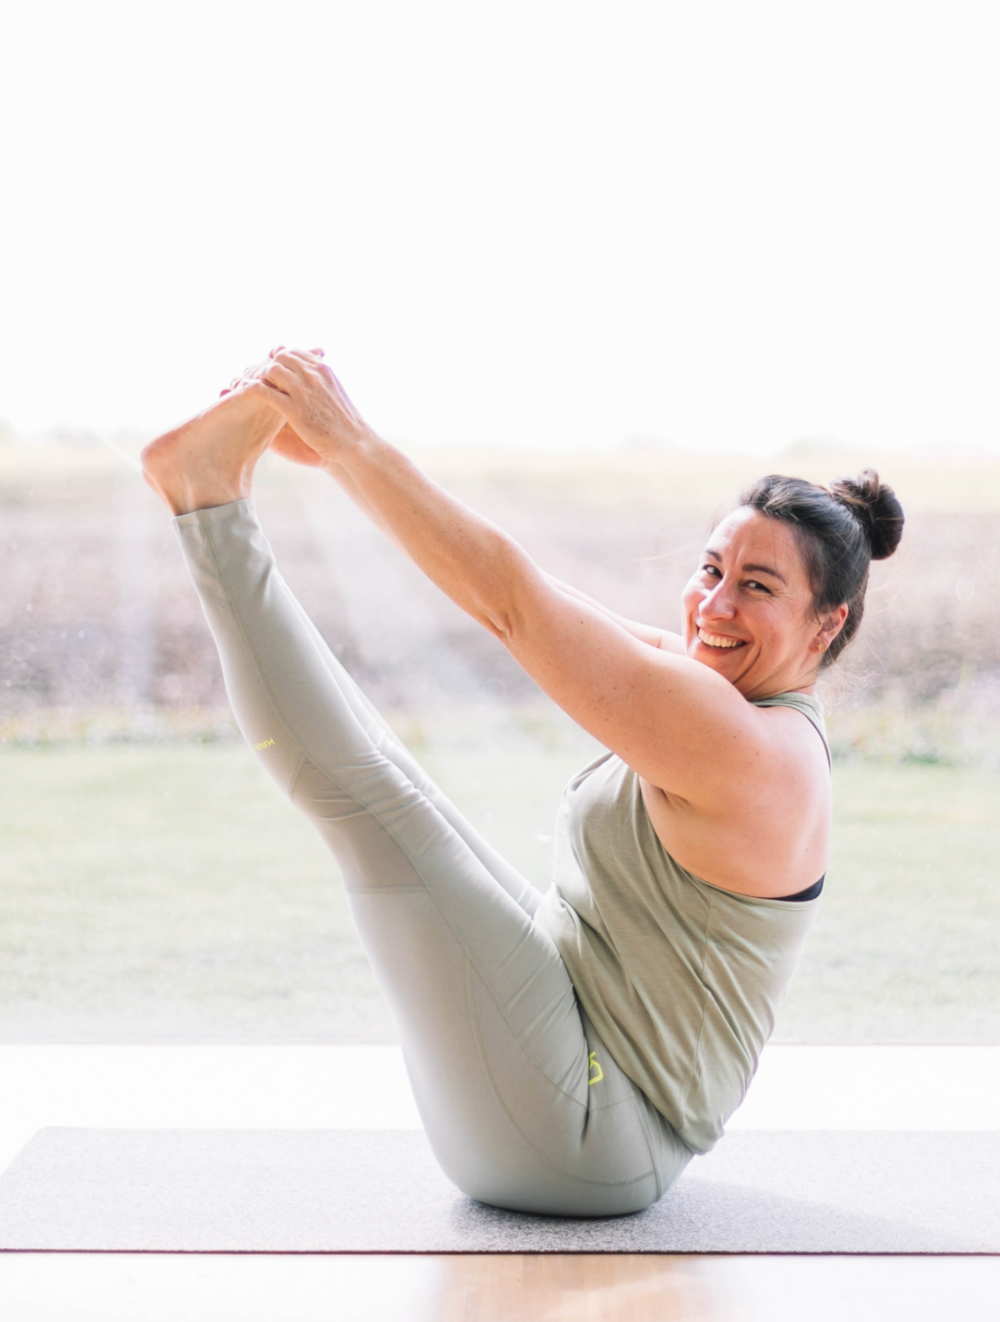 Oorzaak Ideaal Vriendelijkheid Pilates — Zensa Yoga Online